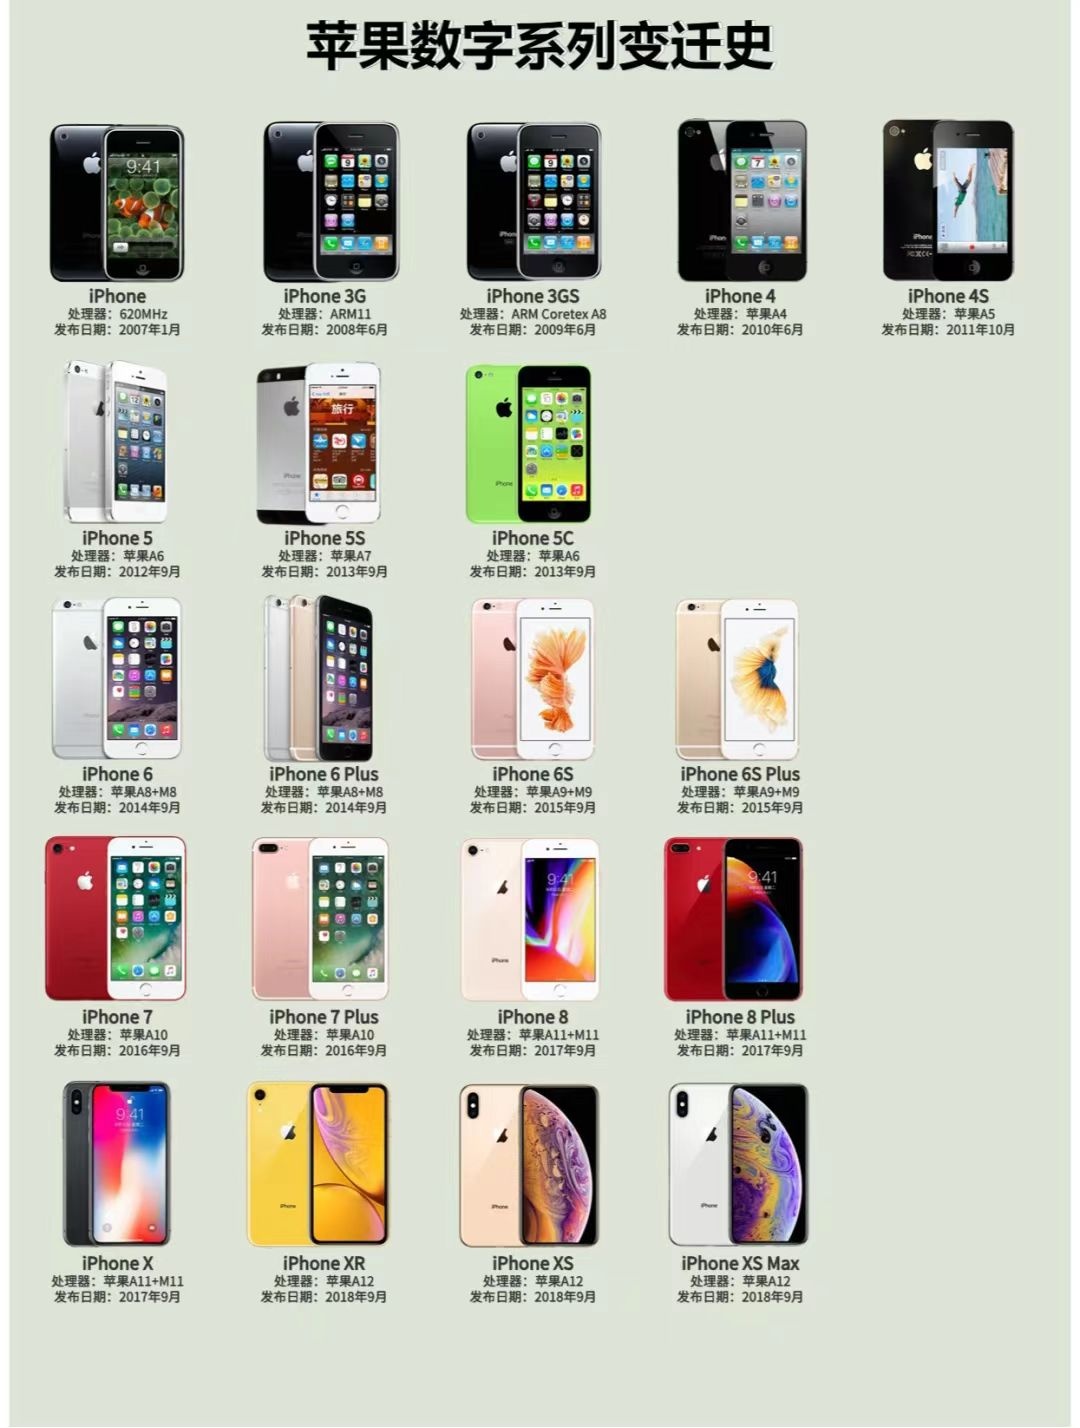 致敬经典   iPhone数字系列全手机模型